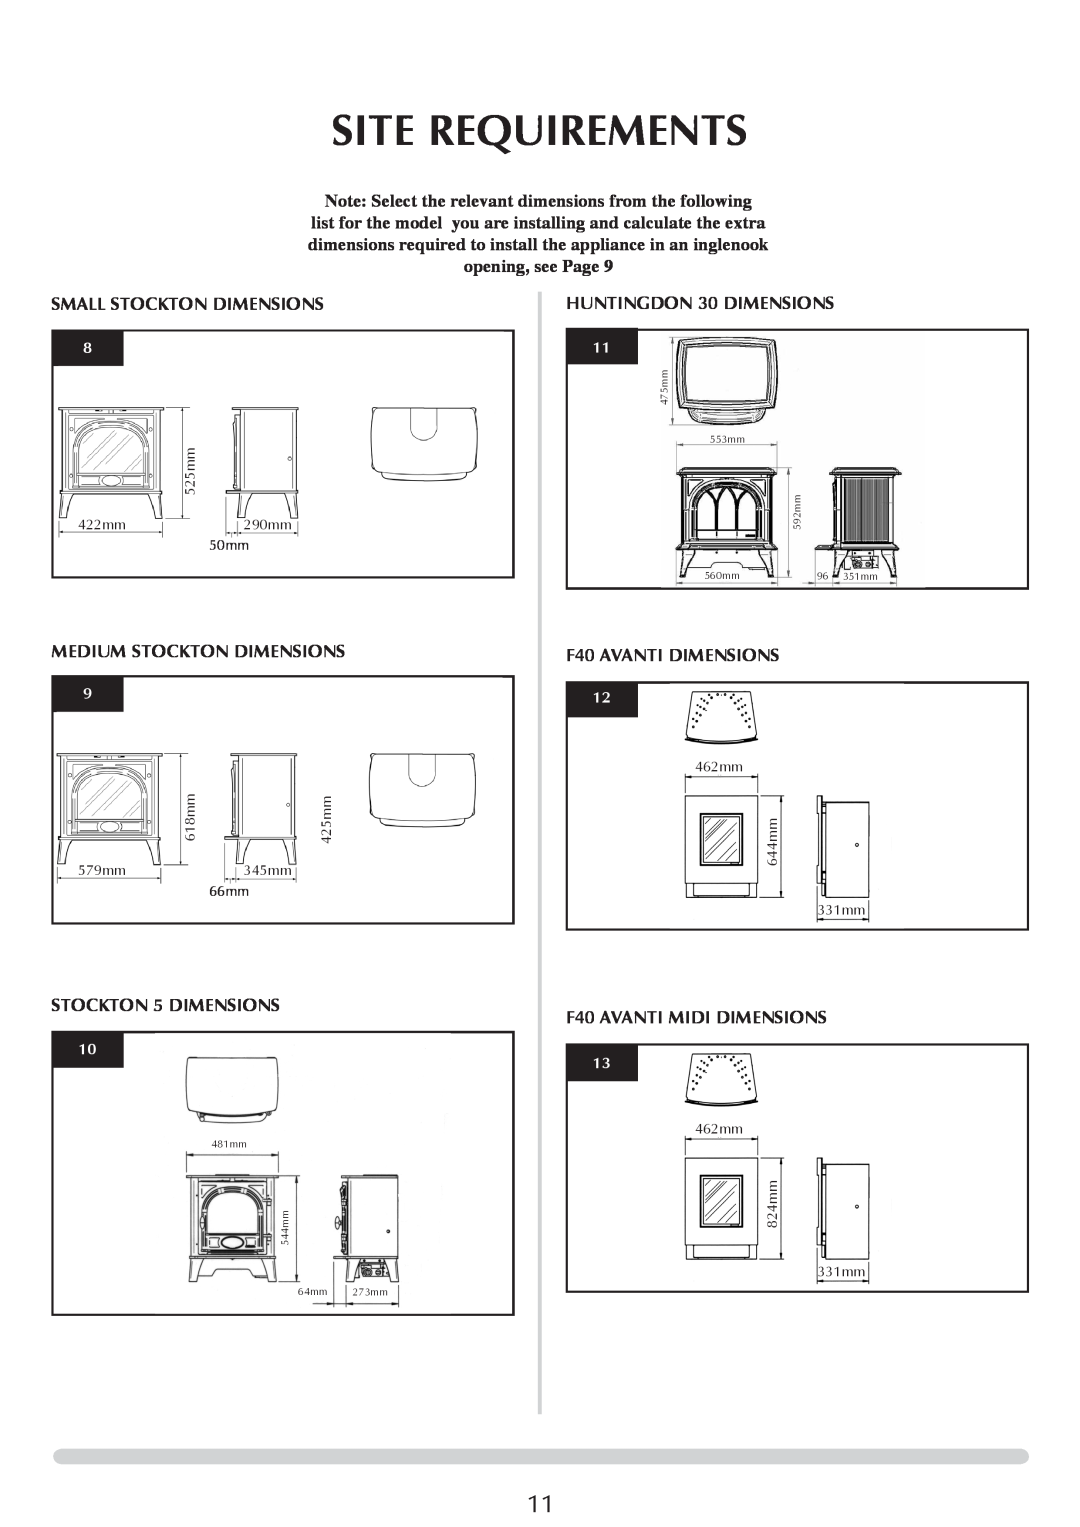 Stovax Electric Stove Range manual Site Requirements, Small Stockton Dimensions, Medium Stockton Dimensions 